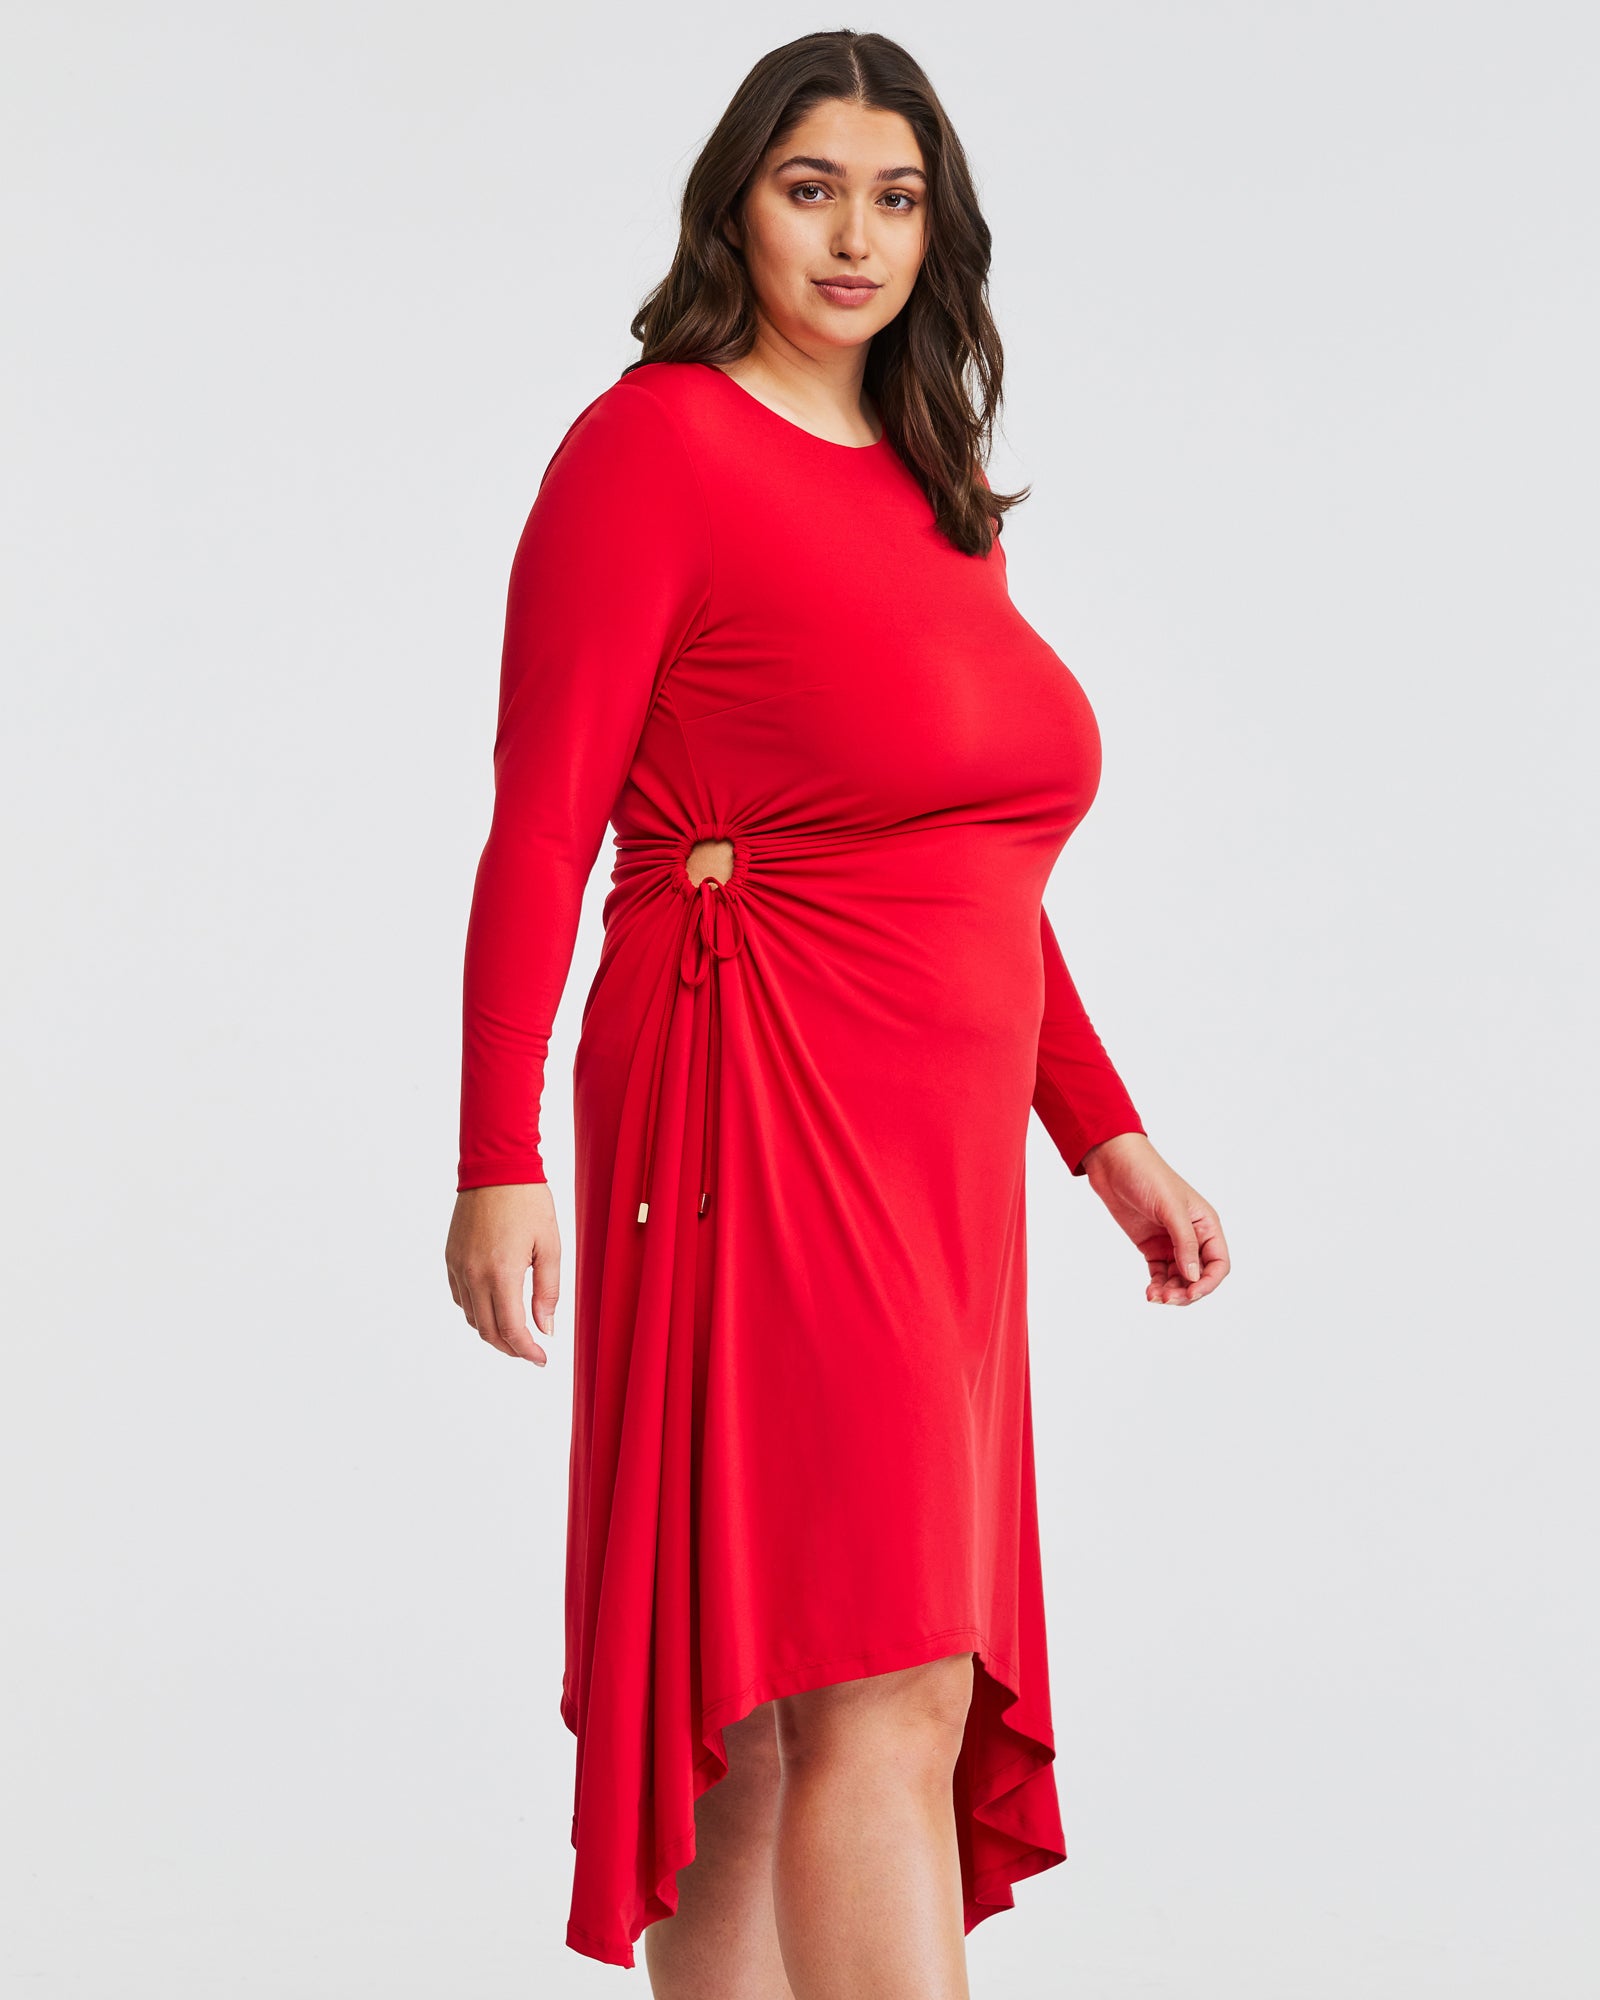 Embrace Your Beauty: Plus Size Women's Dresses Collection – Estelle ...